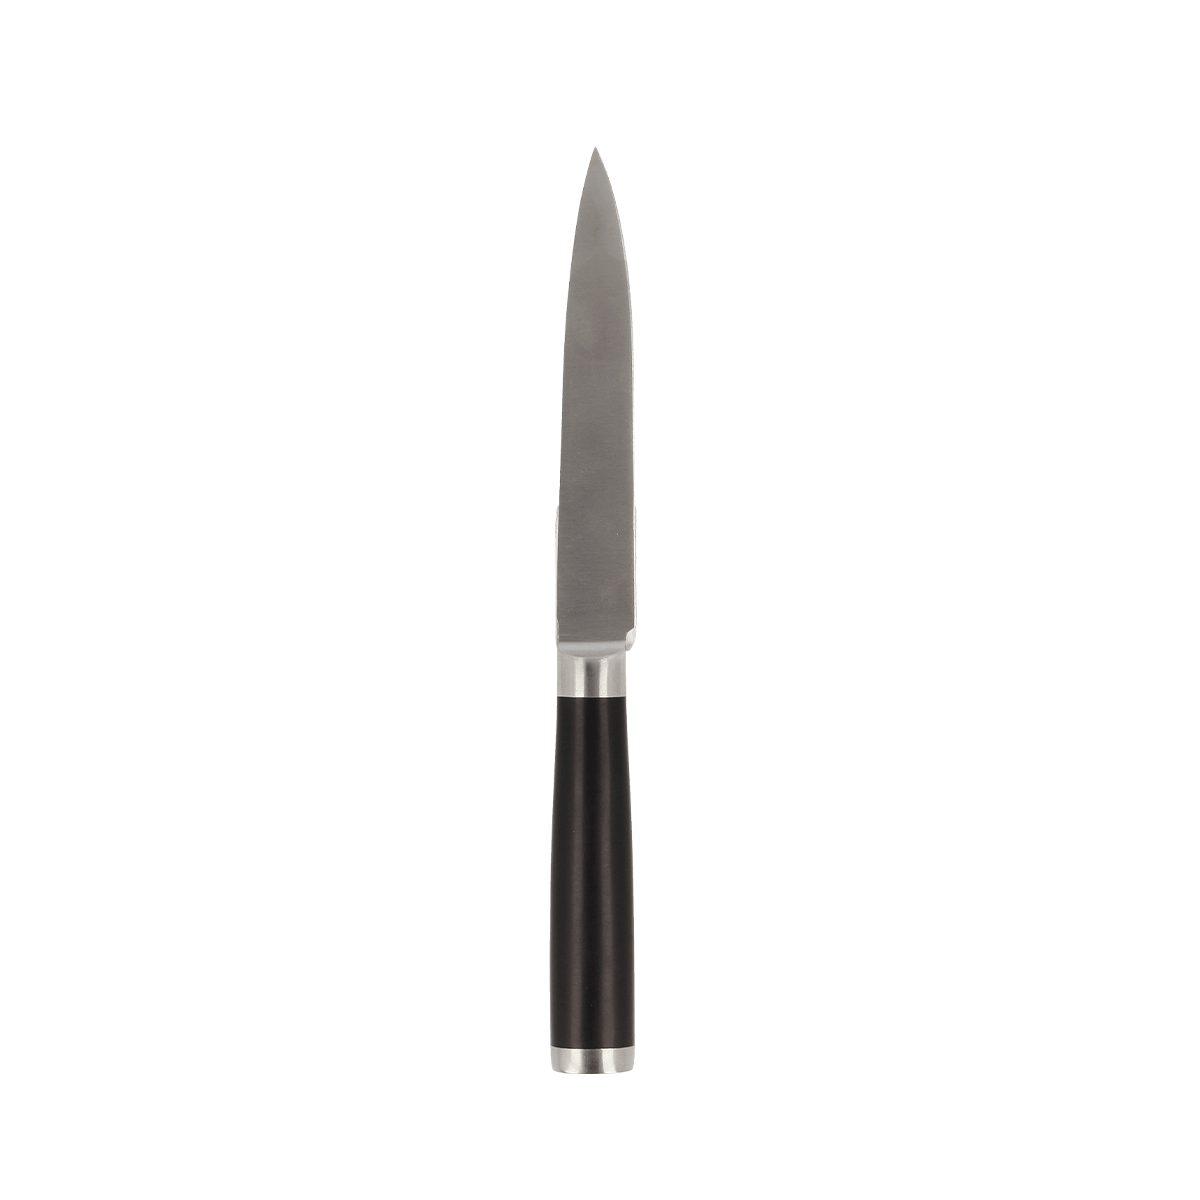 EUROHOME Universalmesser Edelstahl Universalmesser - cm (Messer scharf mit Schneidemesser 23,5 Gemüsemesser Kunststoffgriff, lang), Küche scharf rutschfestem